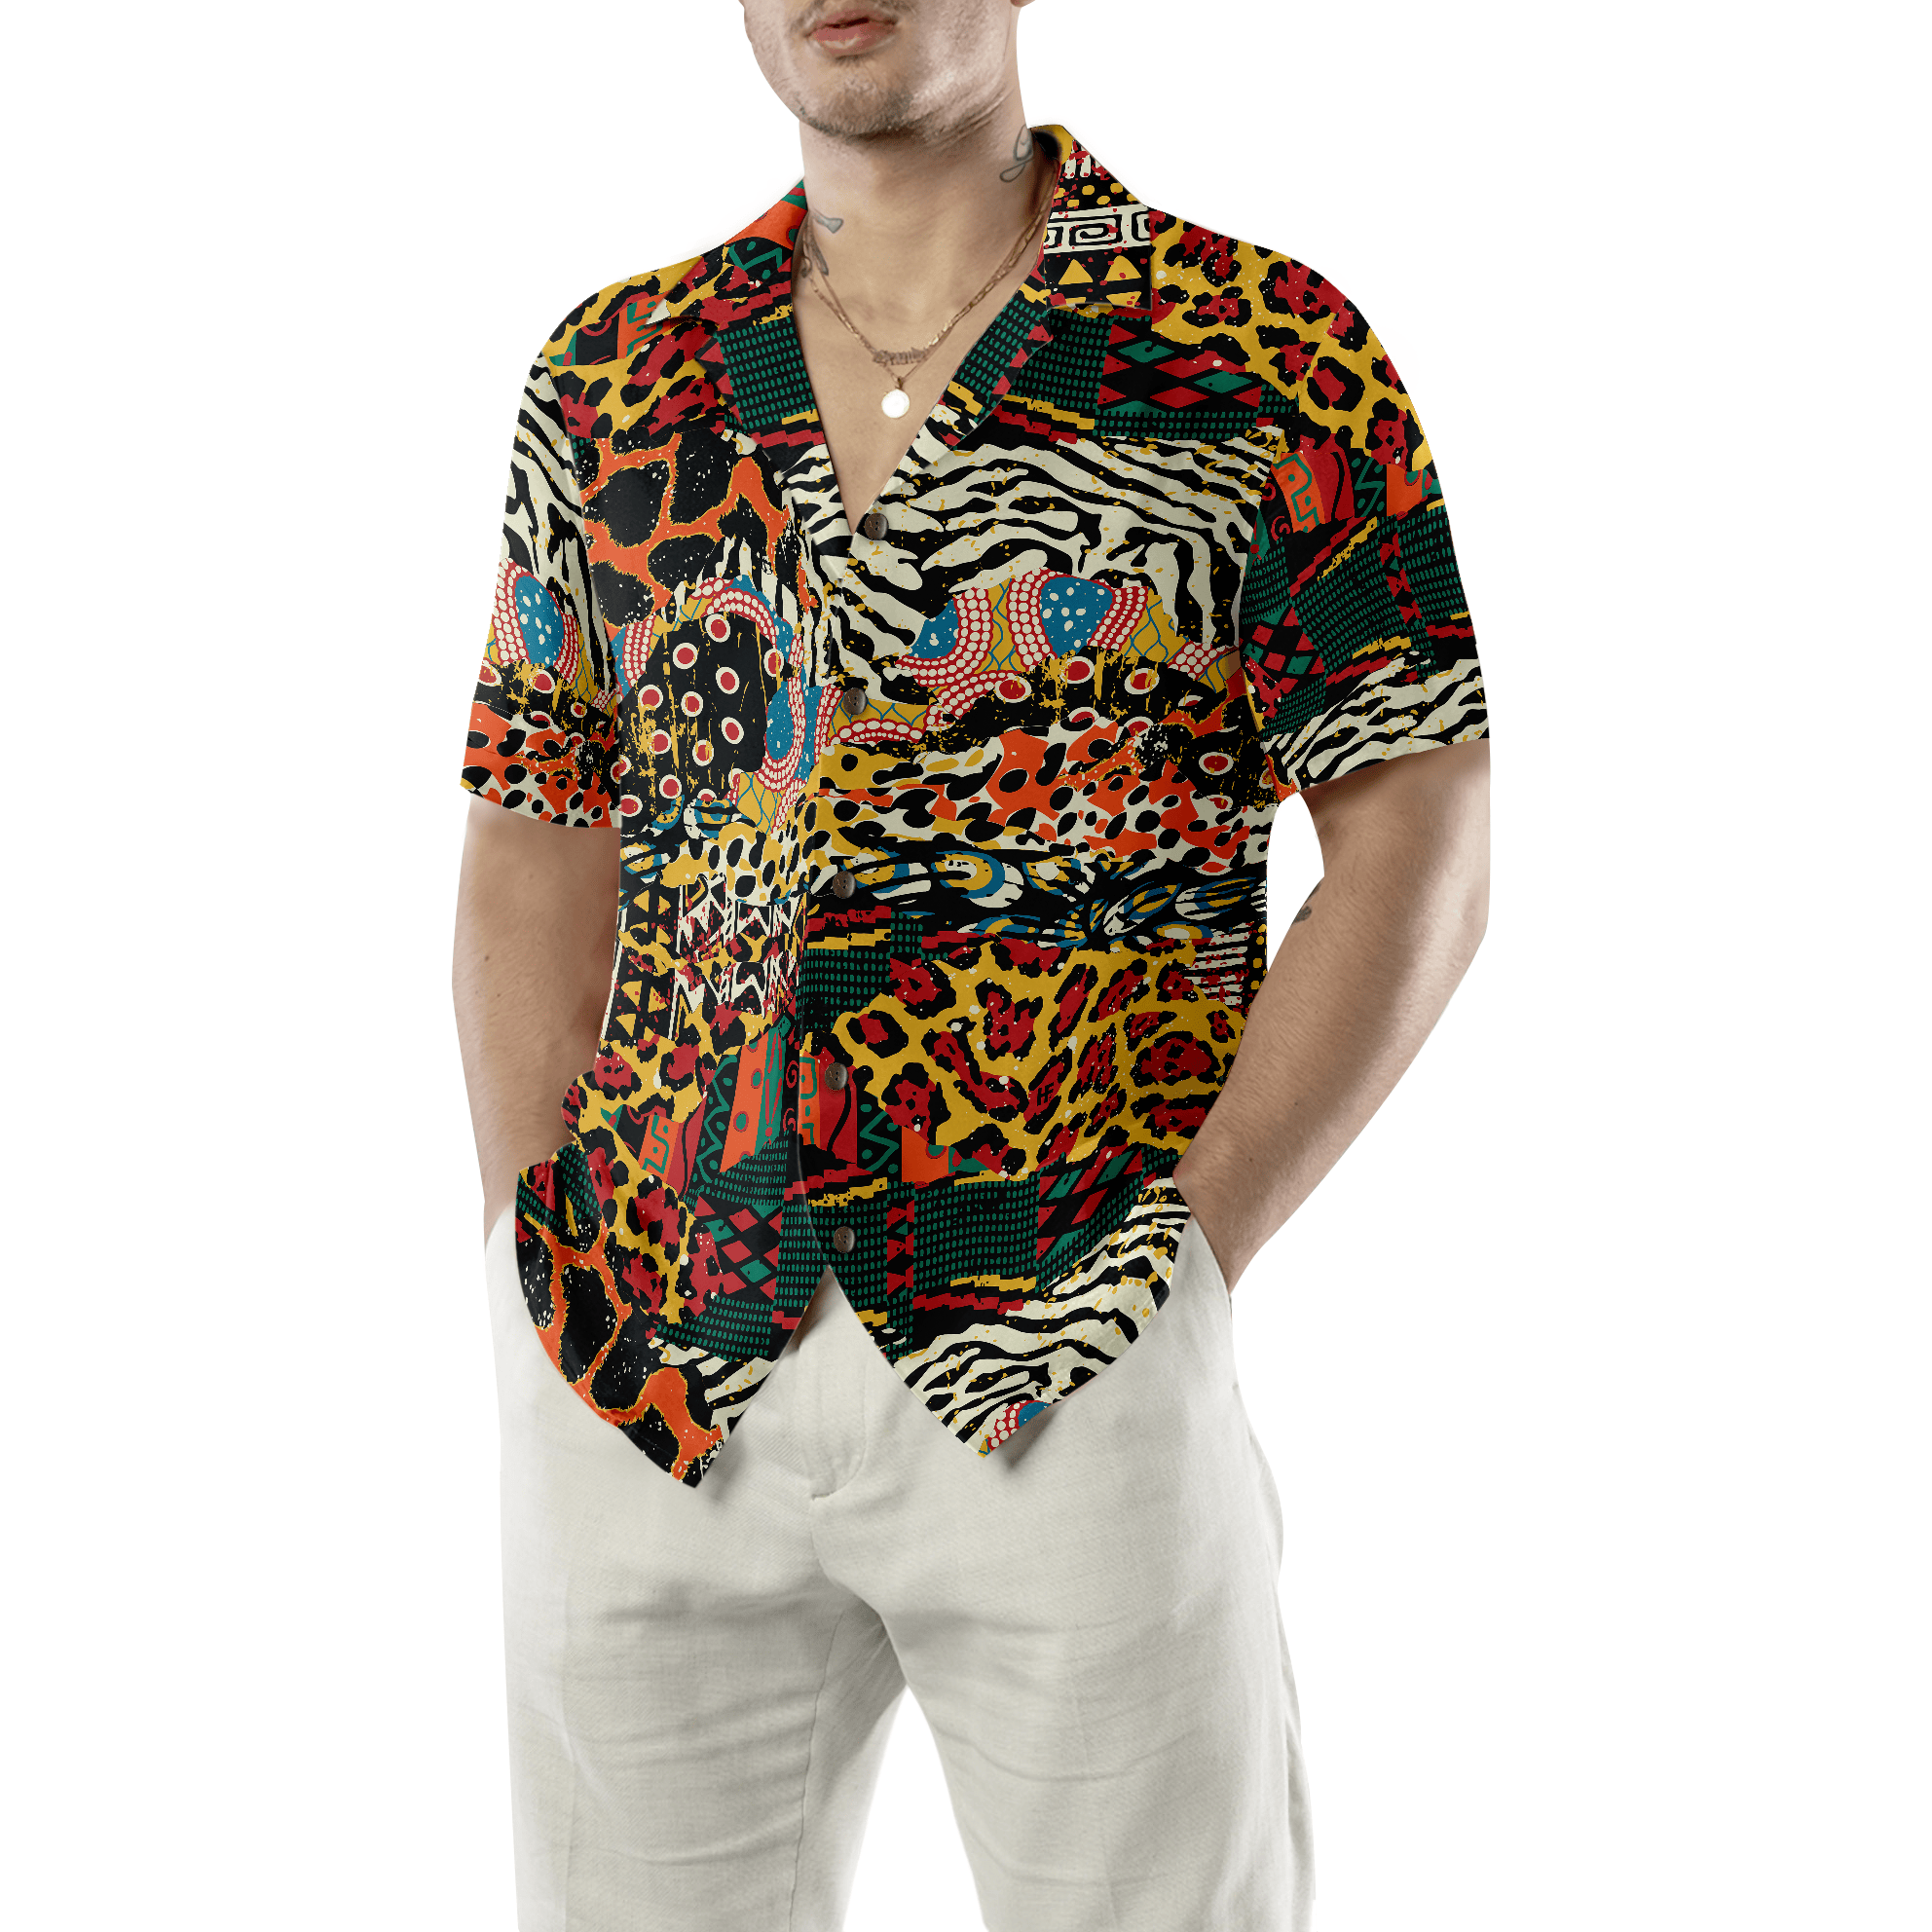 Traditional African Mixed Animal Skin Hawaiian Shirt